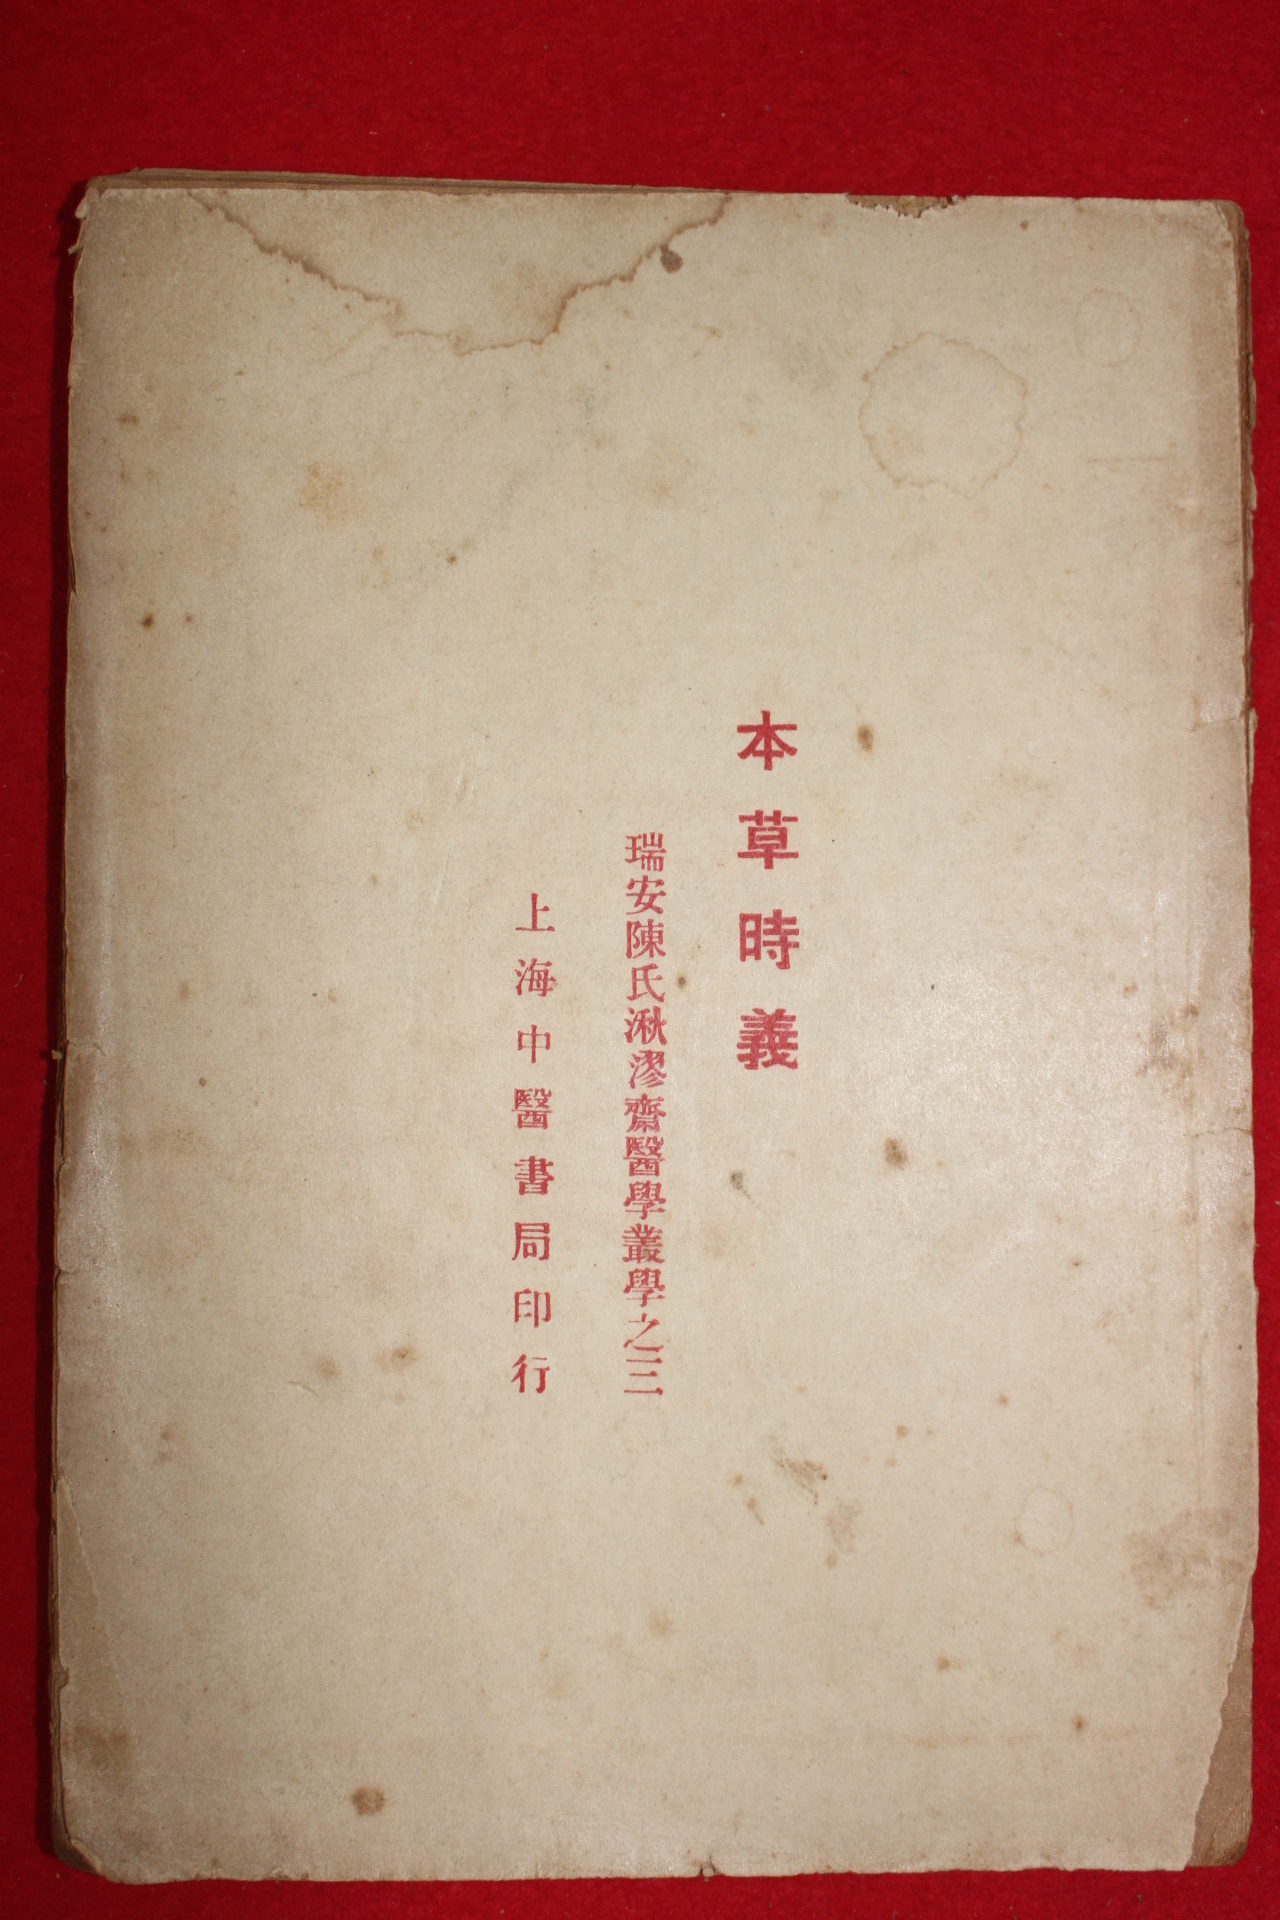 1931년(중화민국20년) 상해중의서국발행 의서 본초시의(本草時義)